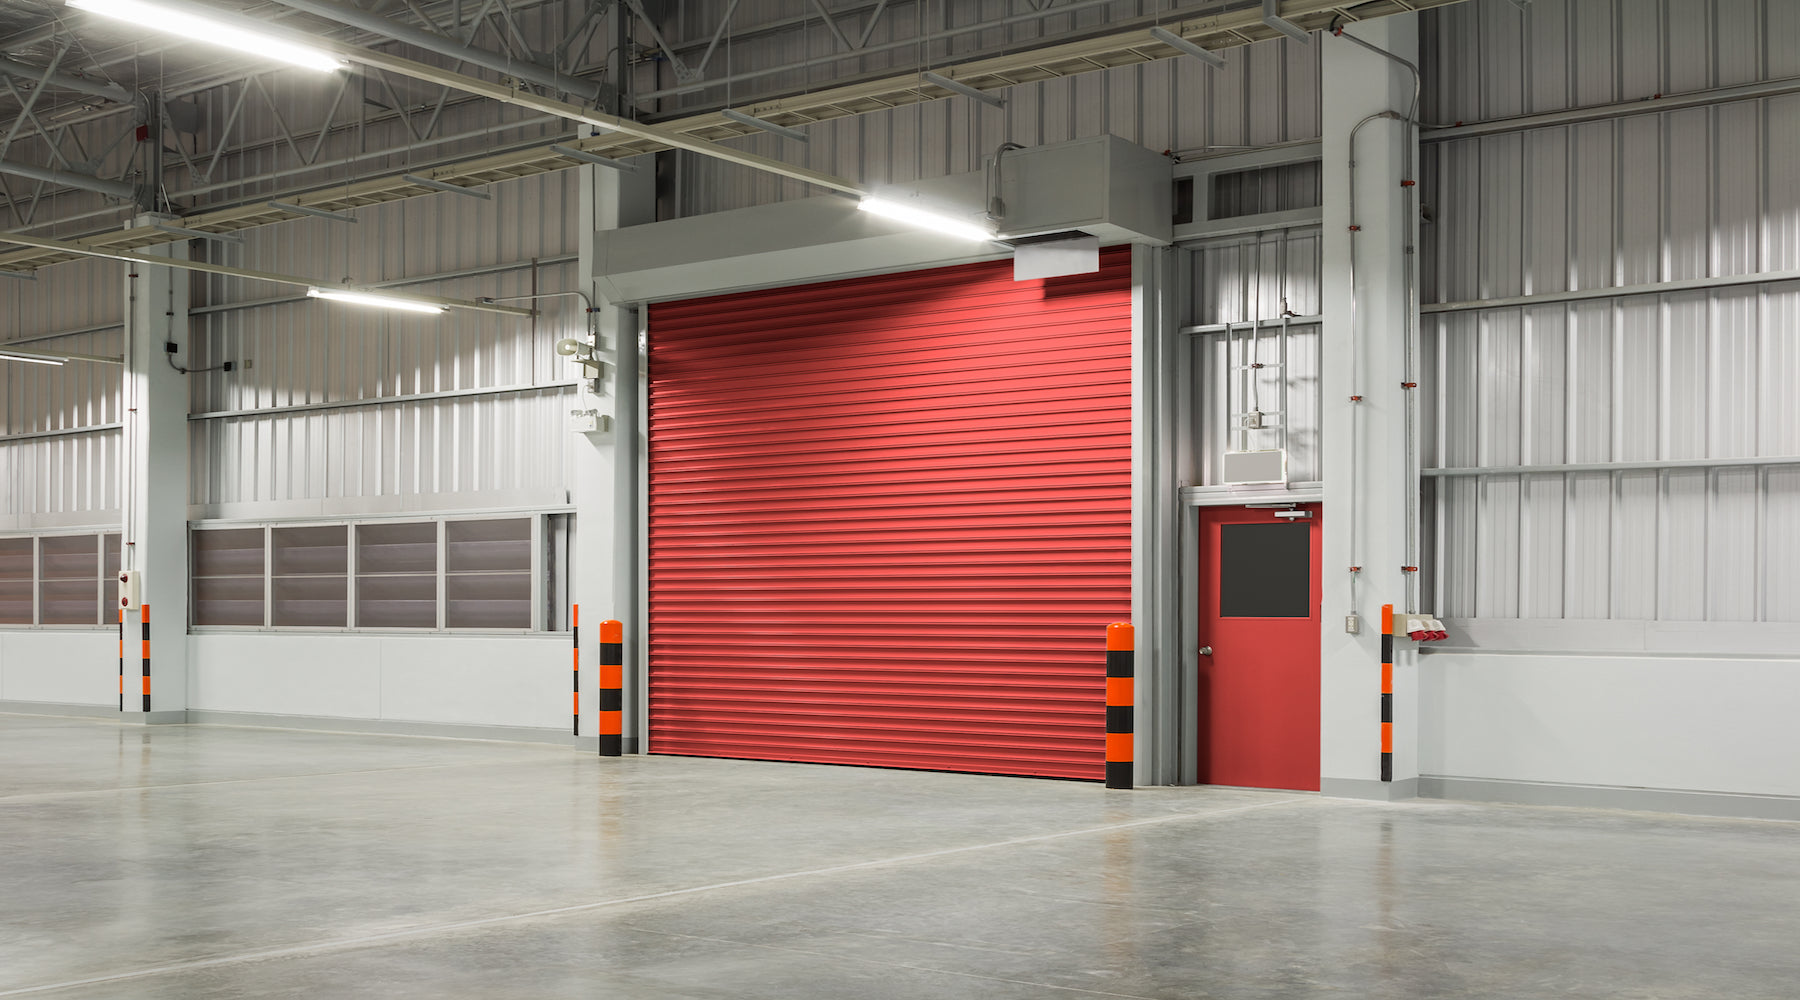 Garage lighting installed in large garage with red roller door